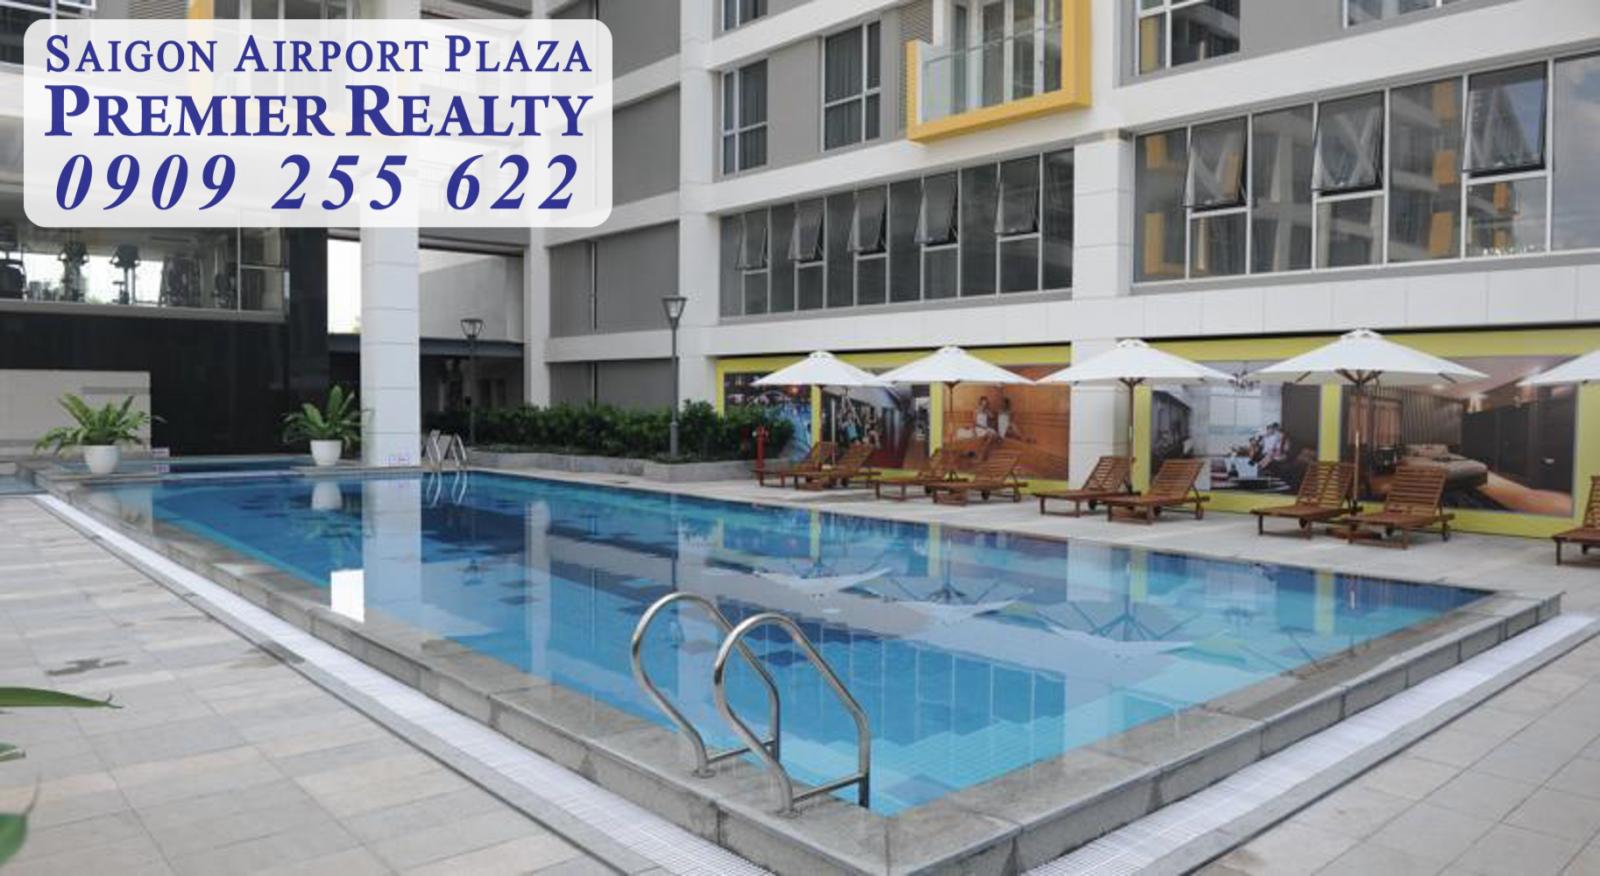 Cho thuê căn hộ chung cư Saigon Airport, 3pn - nội thất hiện đại, căn góc, giá hấp dẫn. Hotline Pkd 0909 255 622 xem nhà ngay